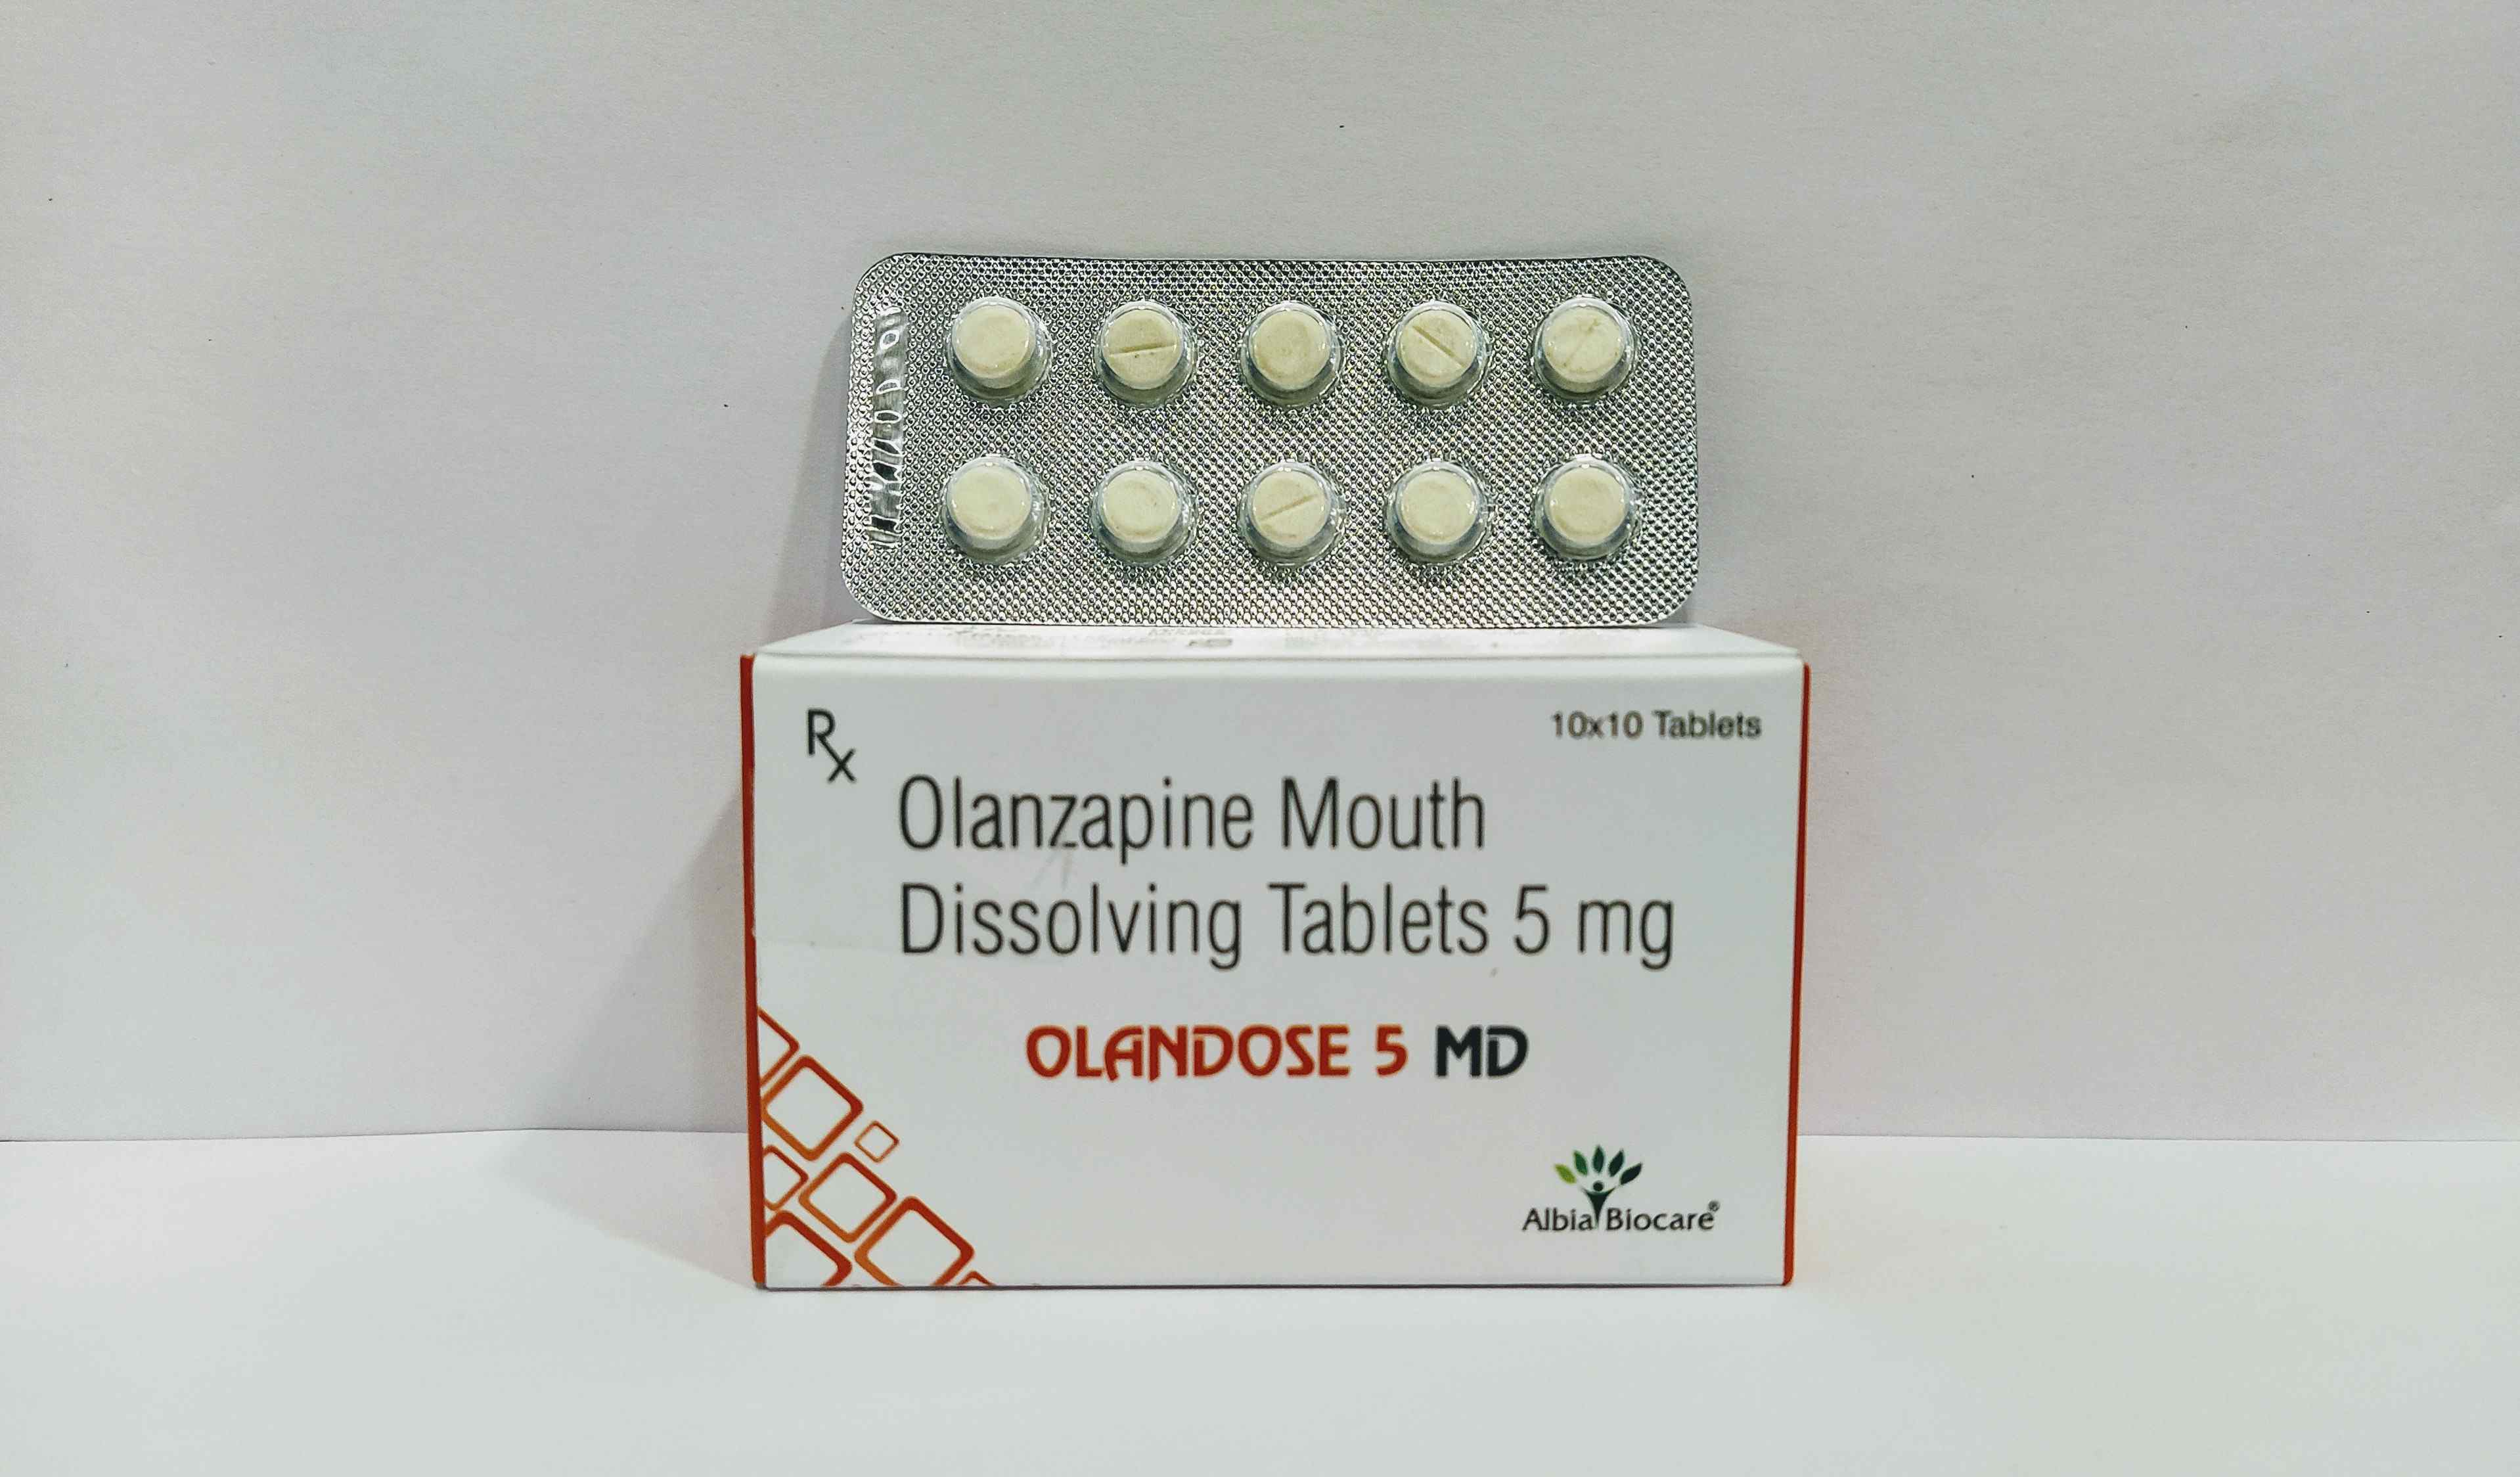 Olandose-5 MD Tab. | Olanzapine Mouth Dissloving Tab. 5mg